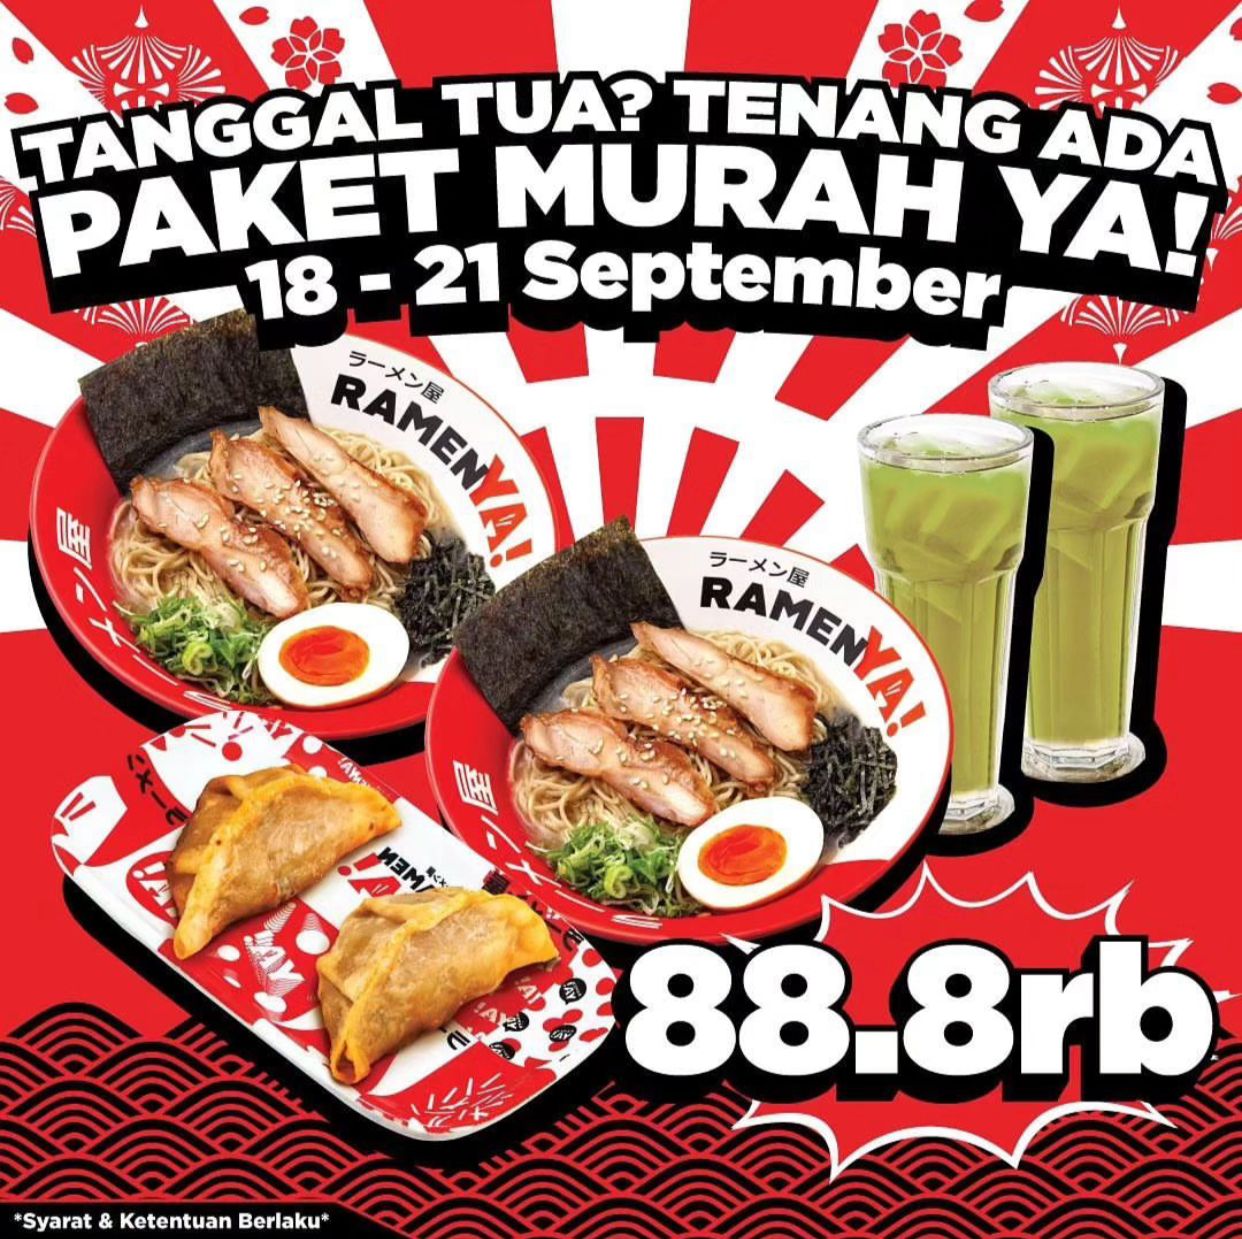 Promo RamenYA, Makan Enak Dengan Paket Murah Di Tanggal Tua!